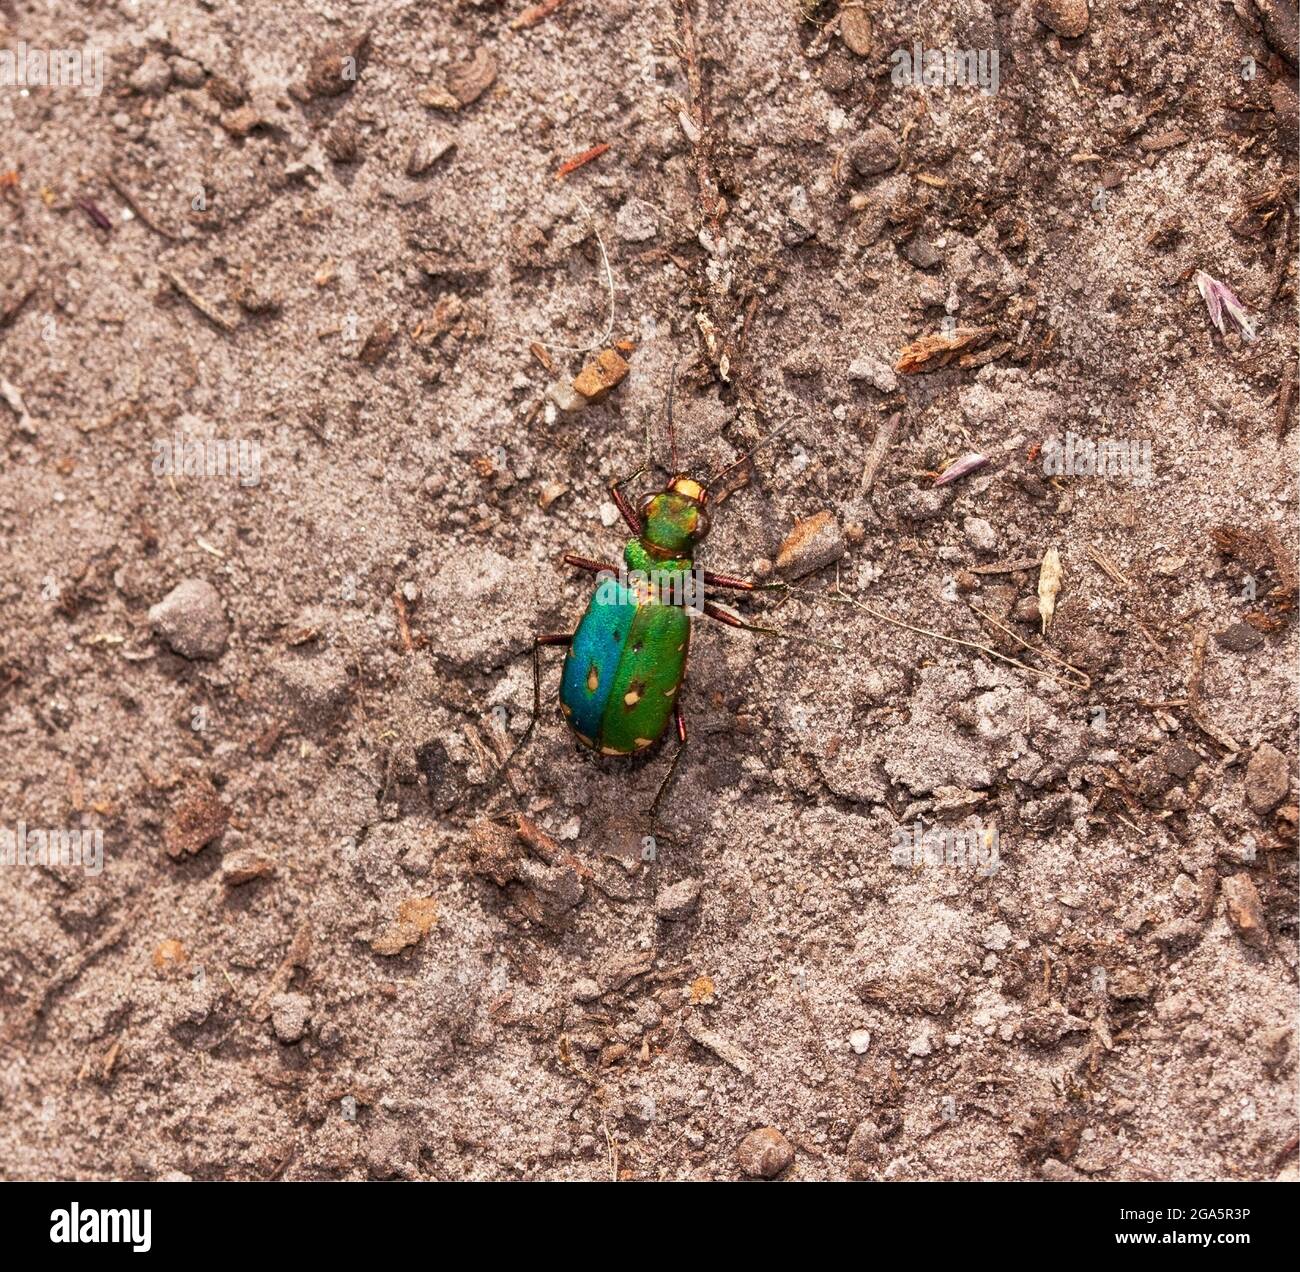 Der Green Tiger Beetle, einer der langbeinigen und schnell laufenden Raubkäfer, bevorzugt Sandflächen und raubt Ameisen und kriechende Insekten. Stockfoto